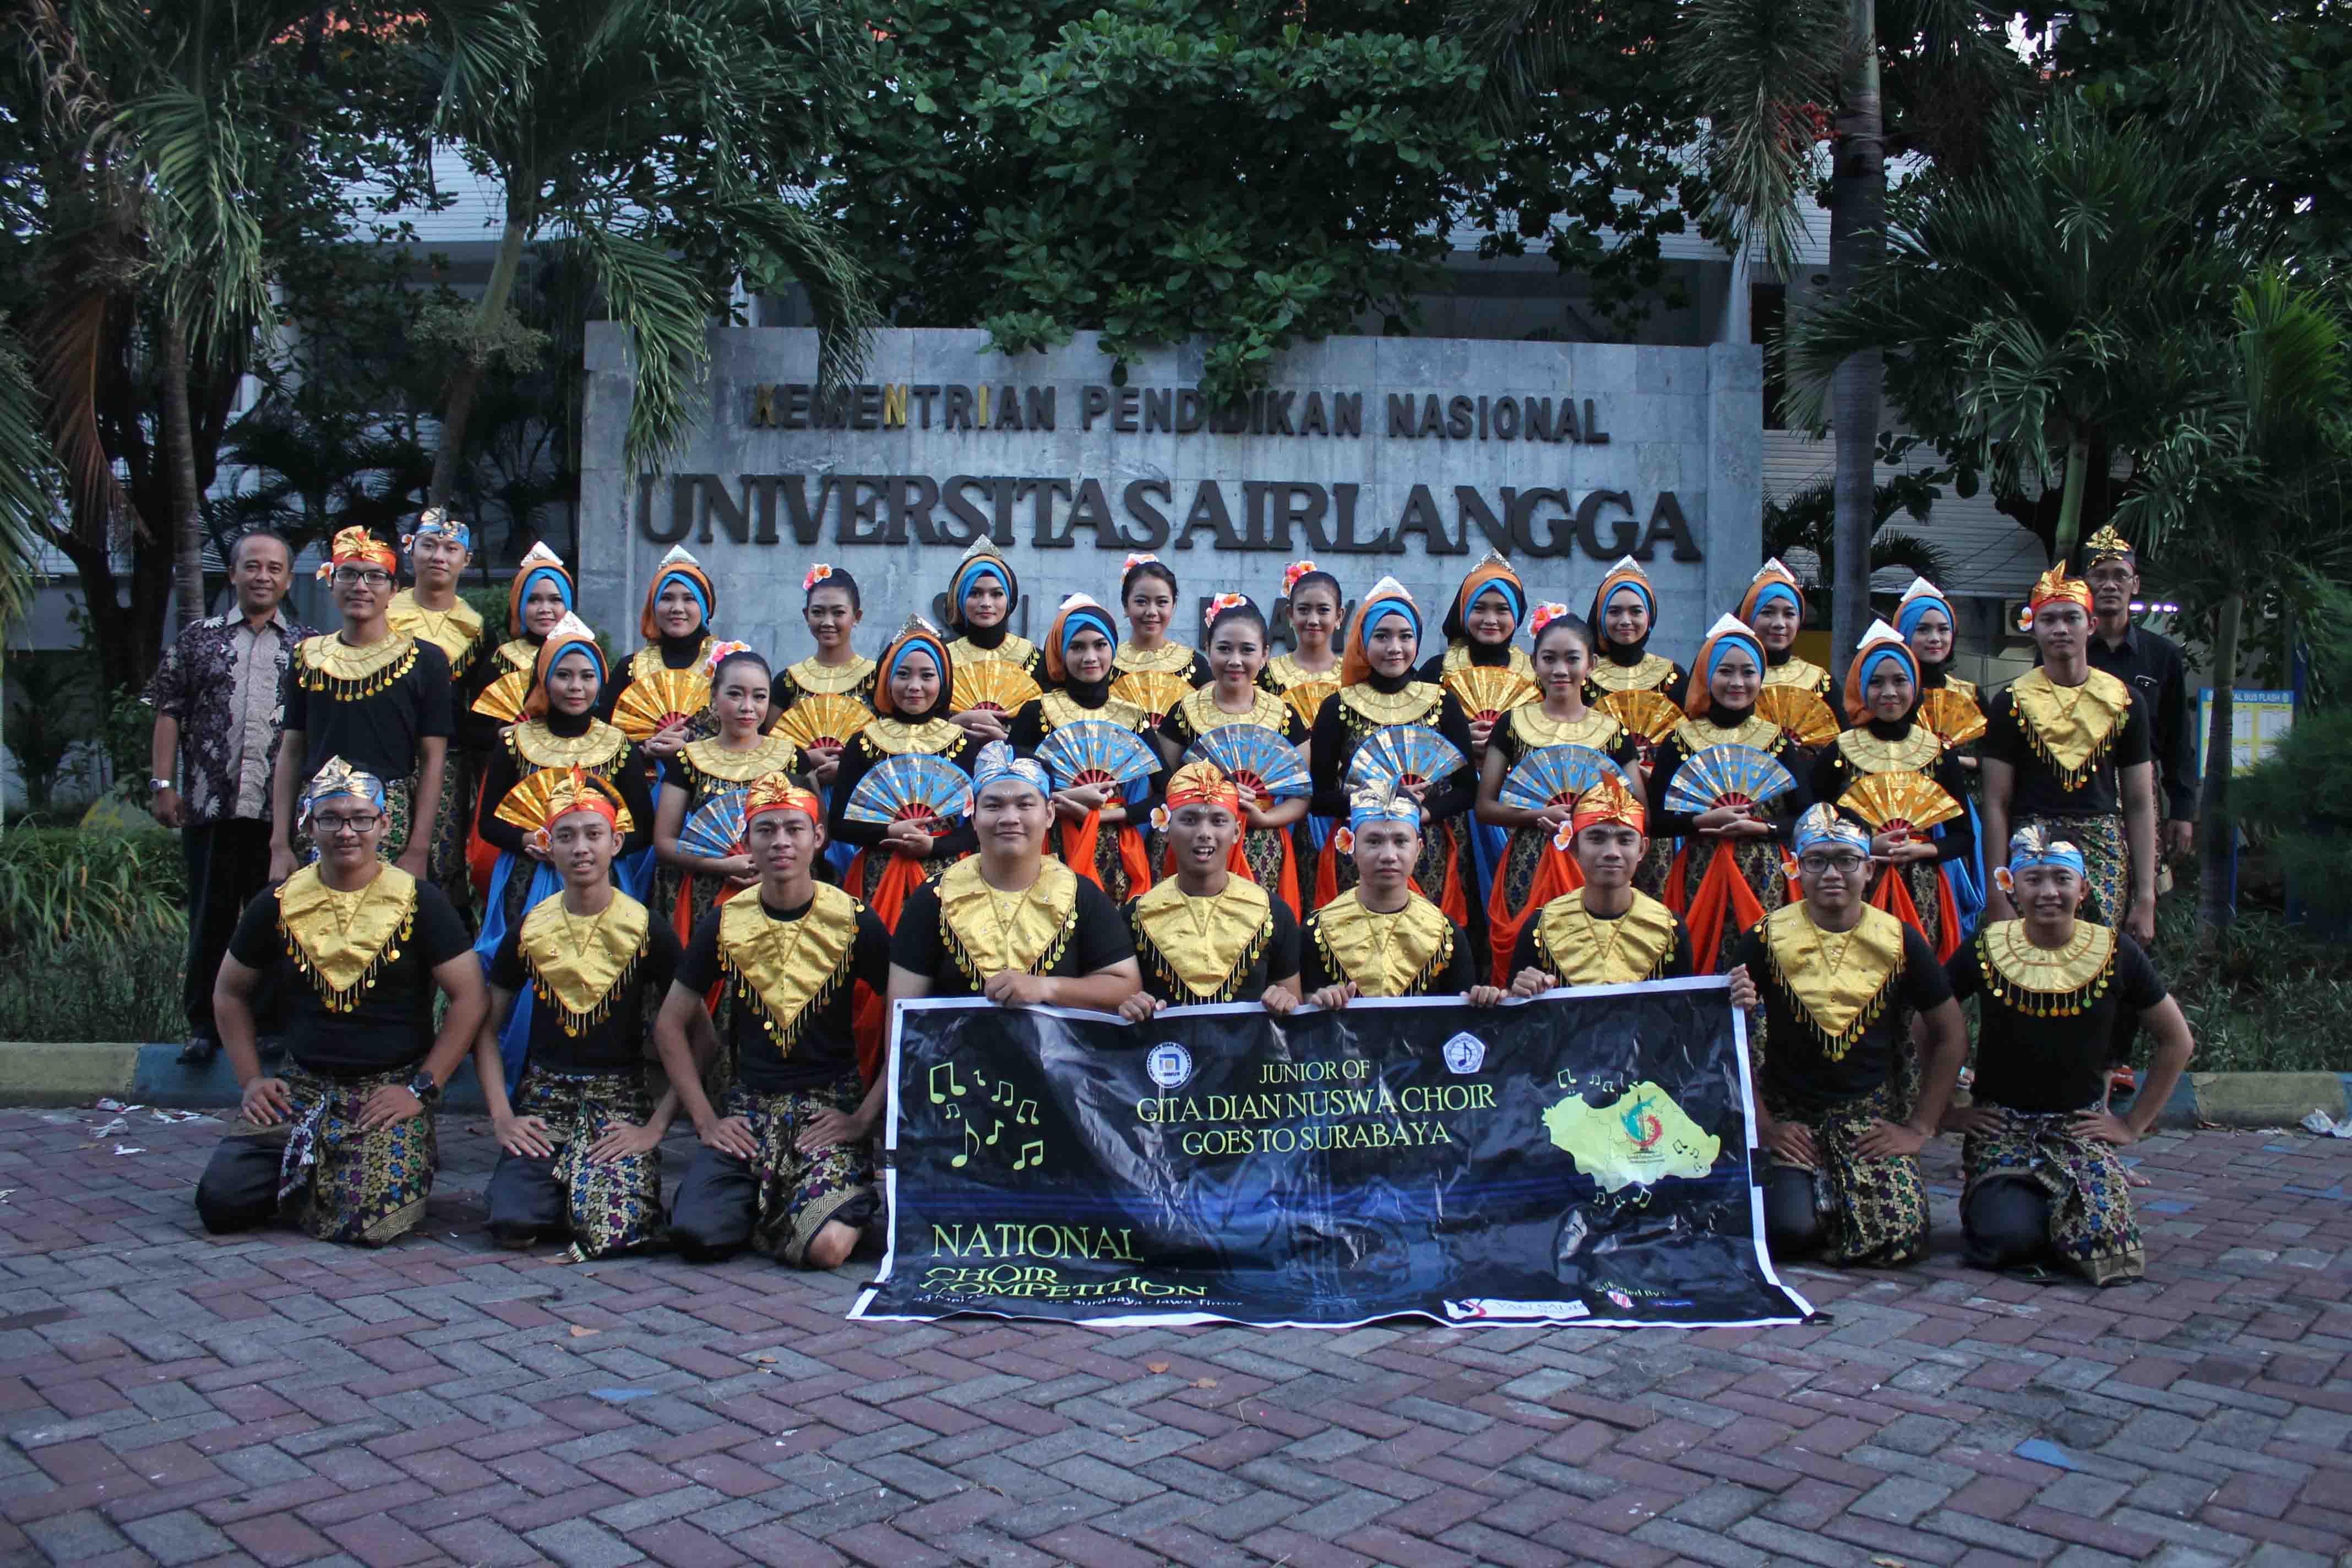 Foto bersama sebelum kompetisi di depan Universitas Airlangga